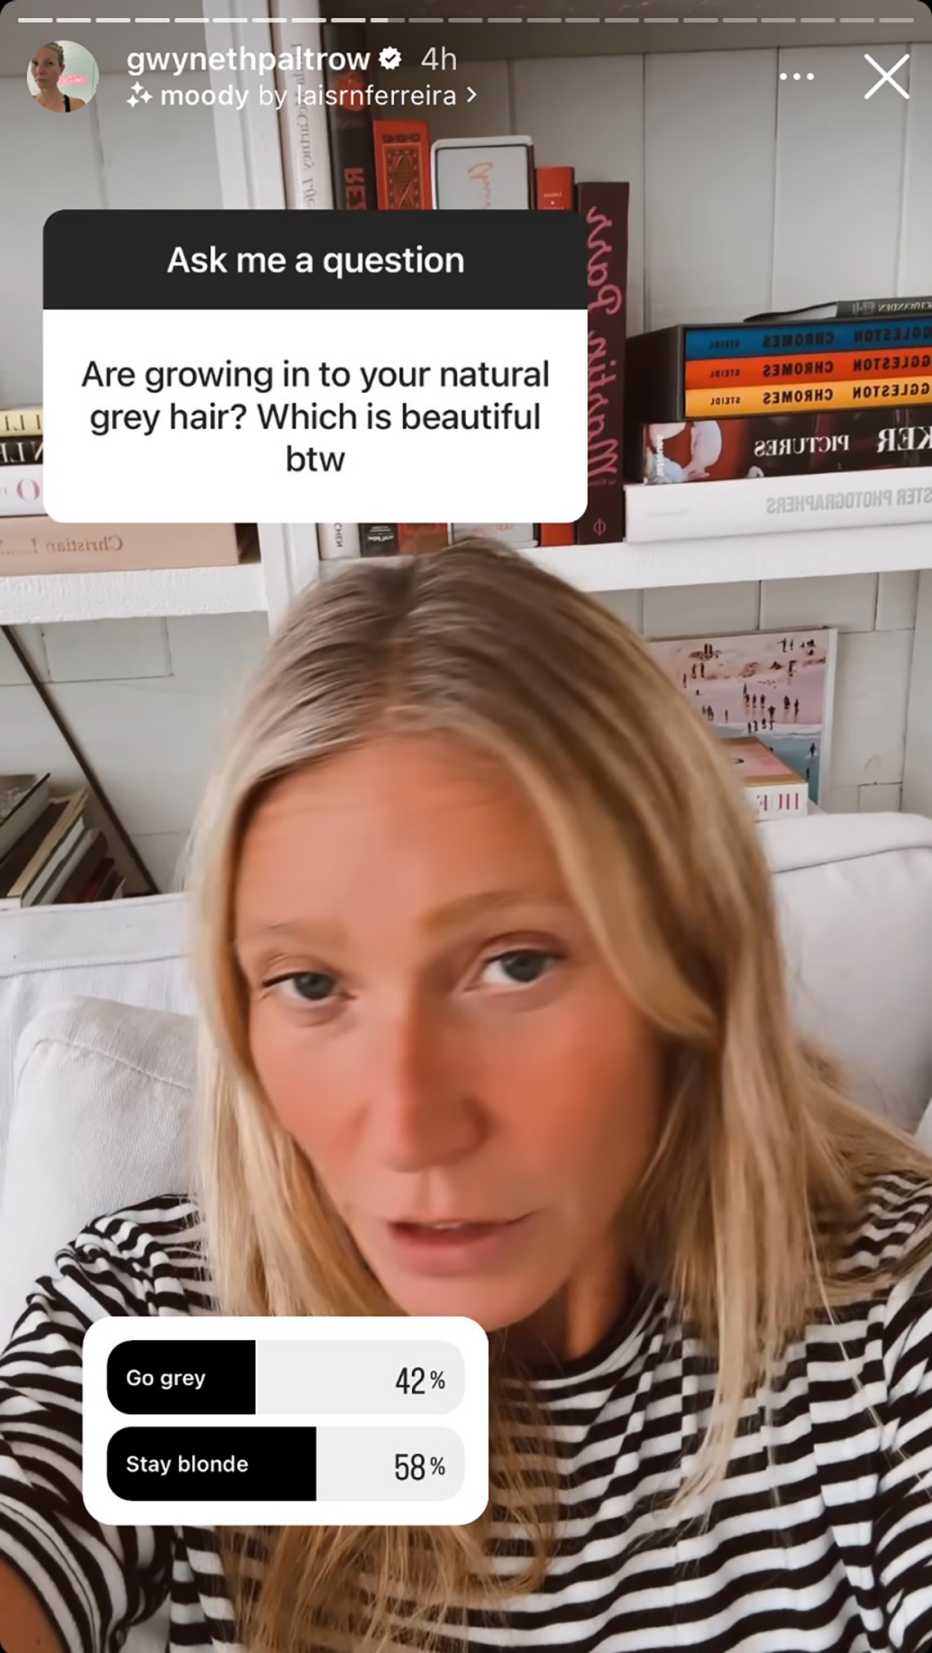 Gwyneth Paltrow en una historia de Instagram contestando preguntas sonre su cabello con canas.